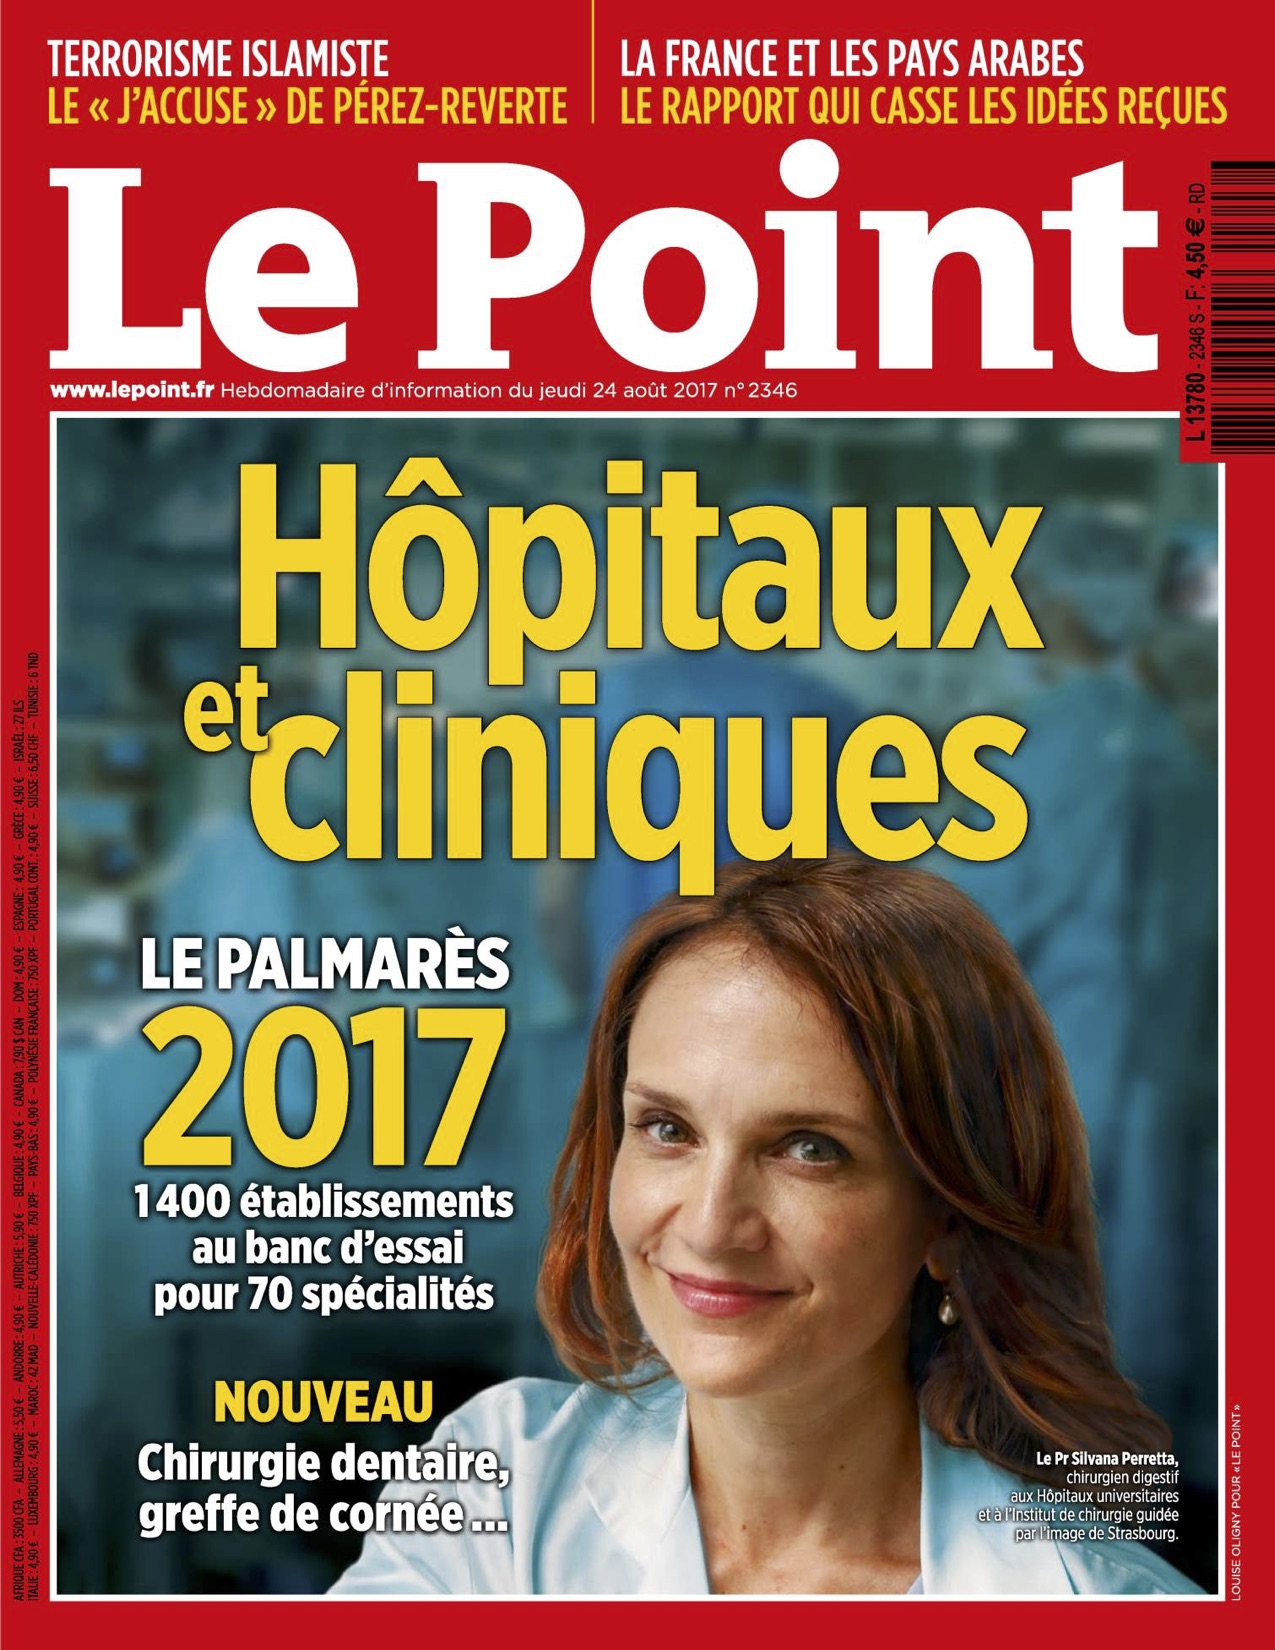 Le Point, Palmarès 2017, Classement, Chirurgie, Pied, Cheville, Hallux Valgus, Prothèse de cheville